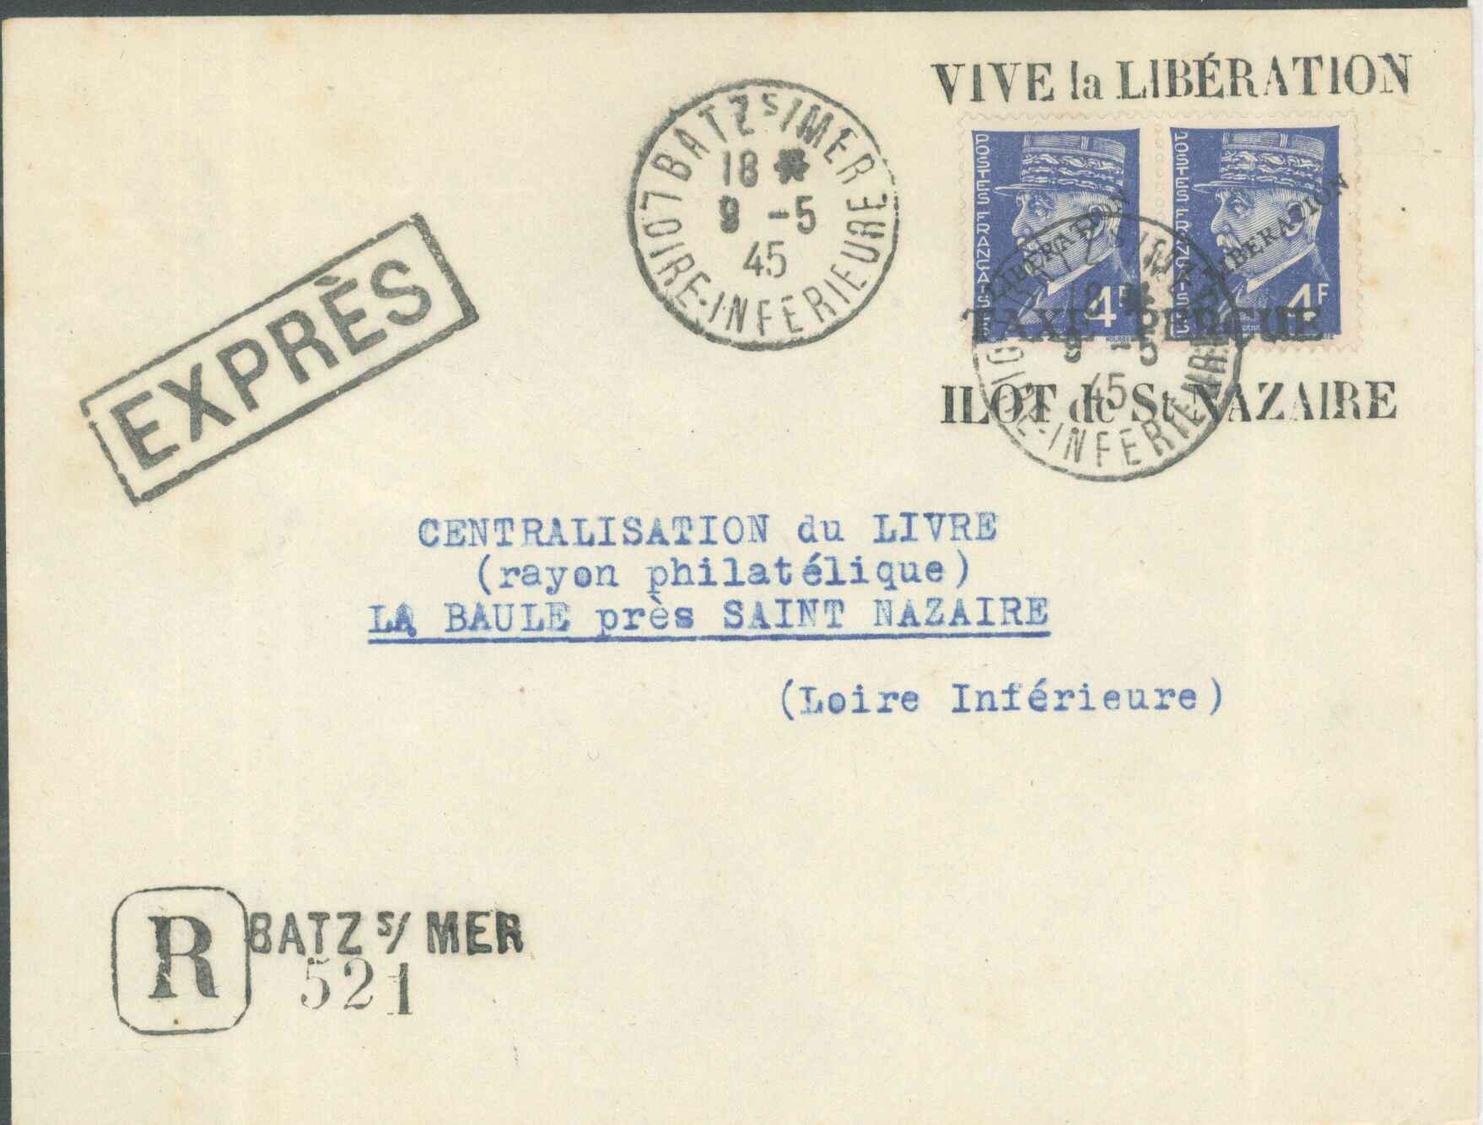 L POCHE DE SAINT NAZAIRE N°521A - Paire - Obl. BATZ S/Mer - 9/5/45 + Griffe "Vive La Libération" - Ilôt De ST NAZAIRE -  - War Stamps